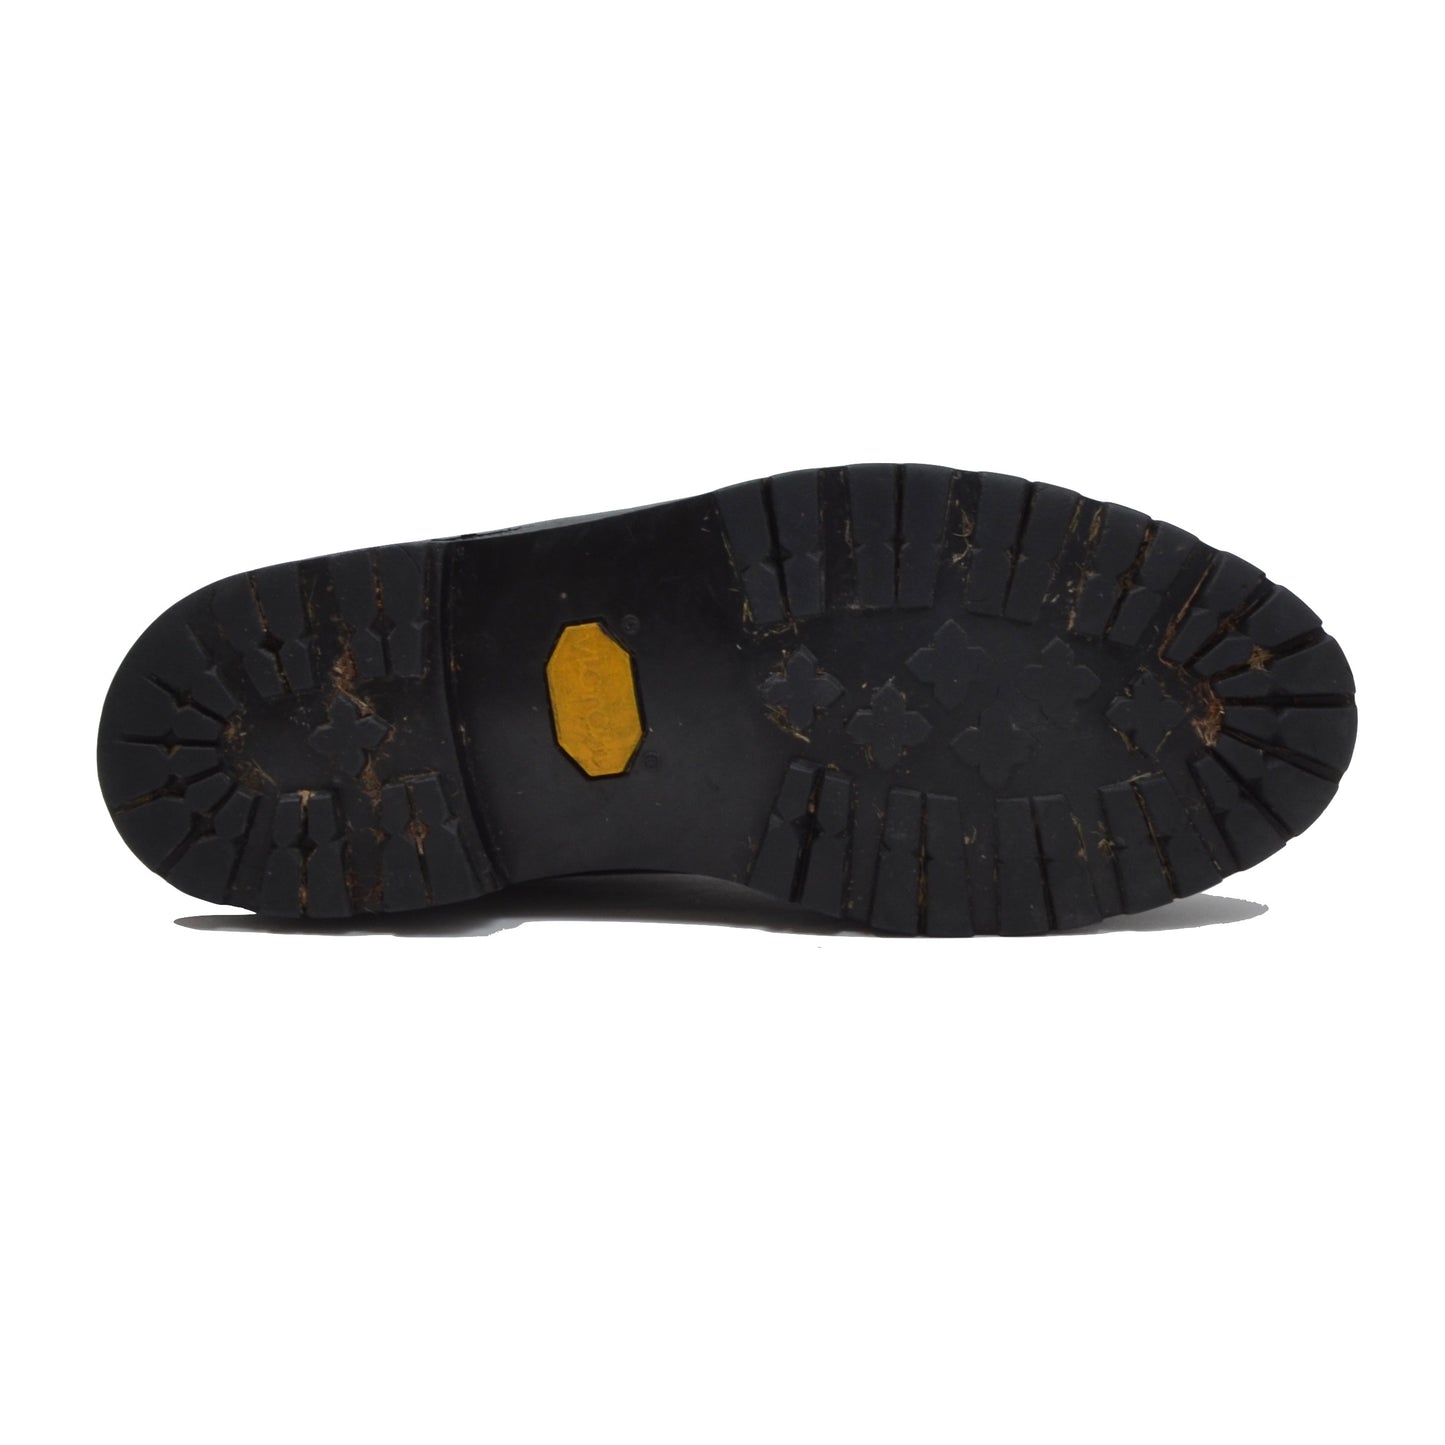 László Vass Split Toe Norweger Shoes Size 43 - Black